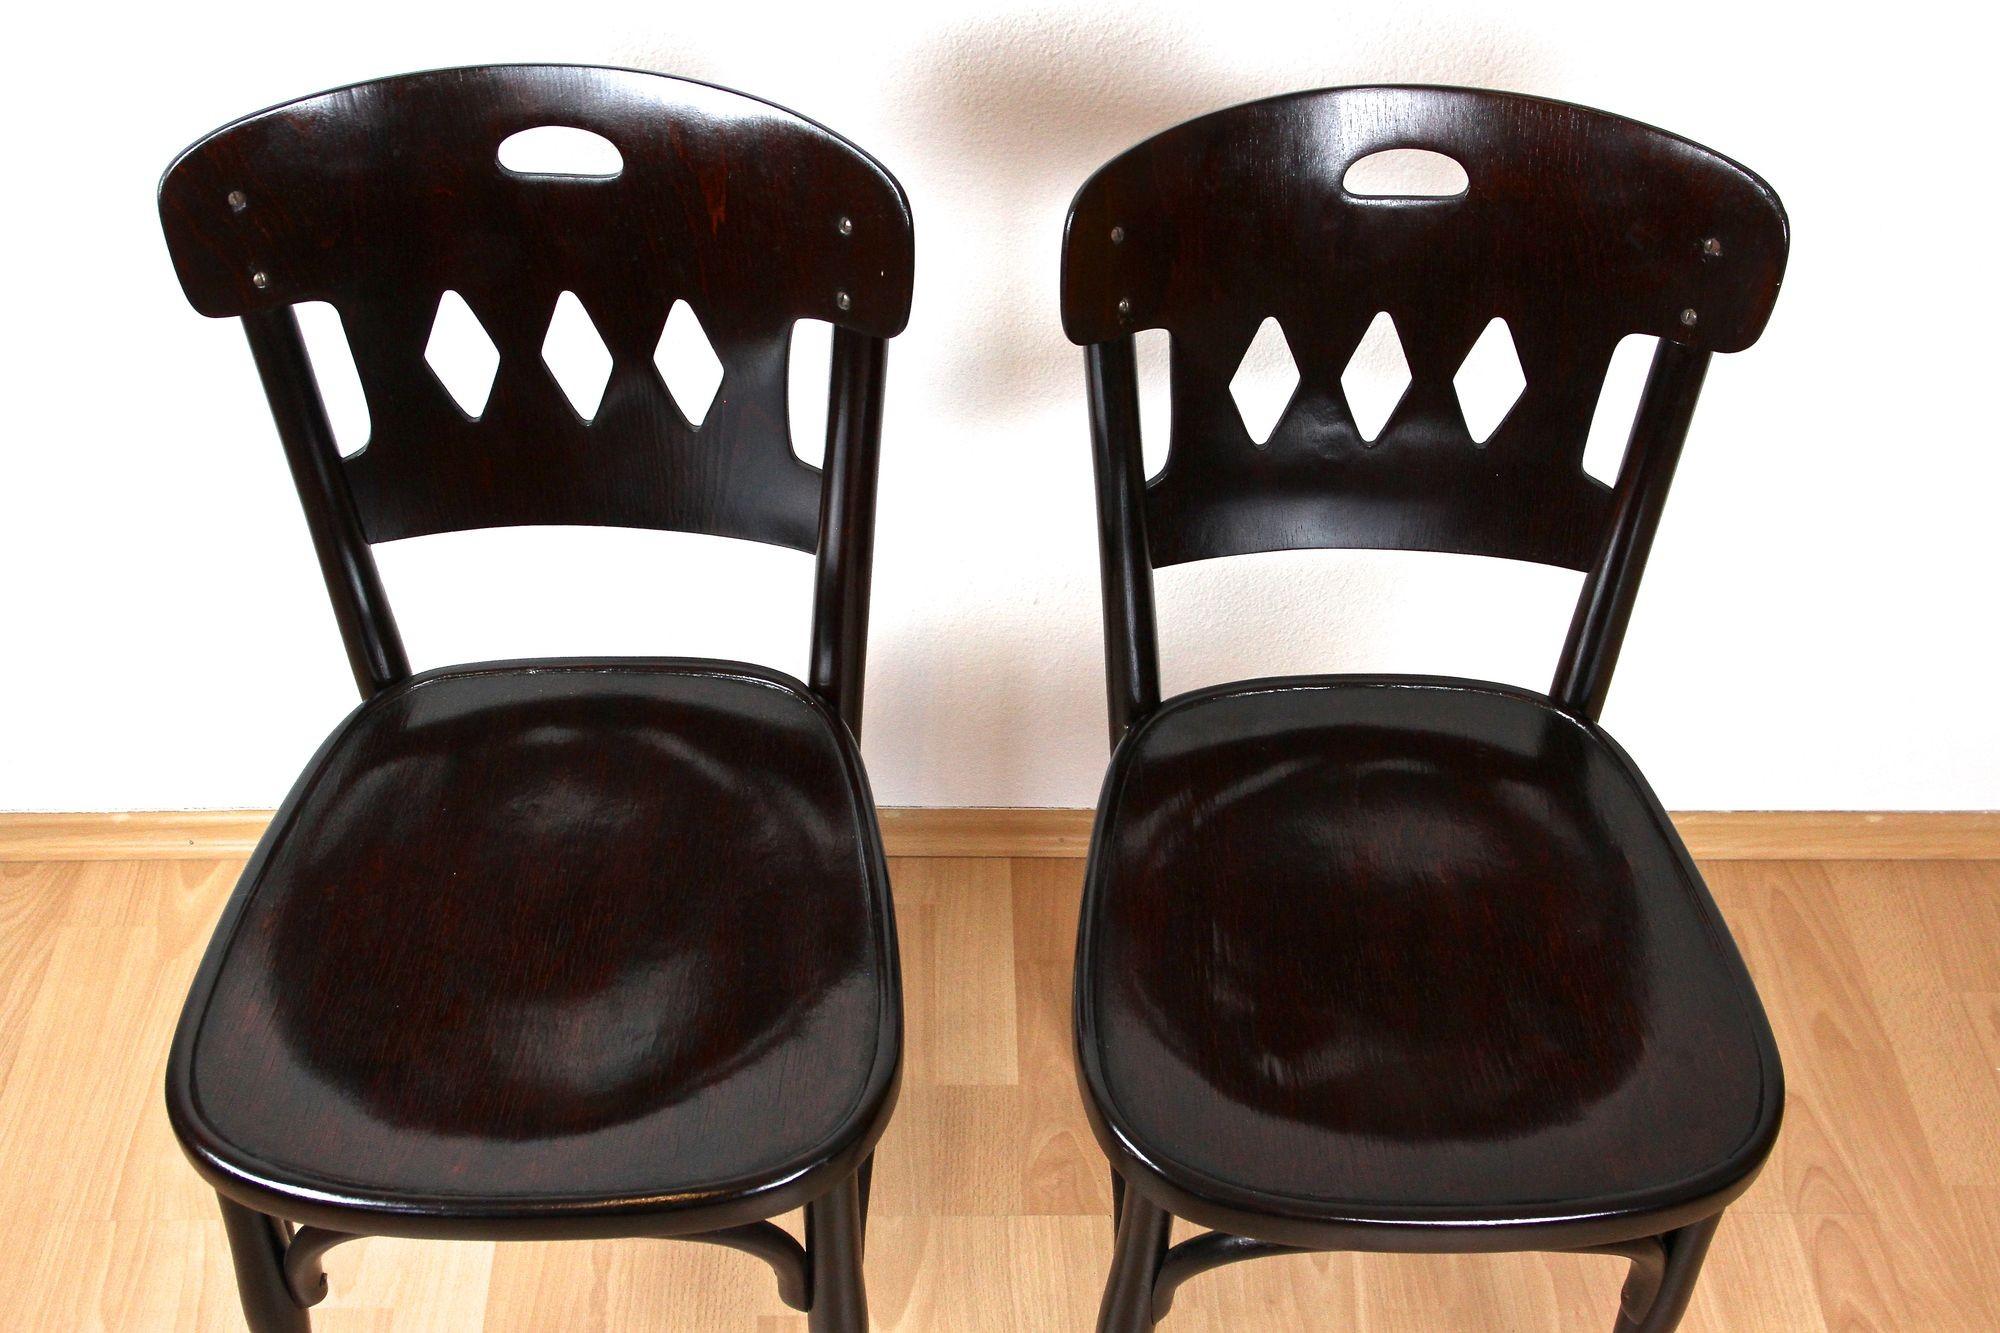 Schönes Paar Jugendstil-Bugholzstühle der renommierten Firma Jacob & Josef Kohn in Wien/Österreich aus der Zeit um 1910. Diese schönen Stühle aus dem frühen 20. Jahrhundert wurden aus feinem Bugholz (Buchenholz, das unter heißem Dampf und hohem